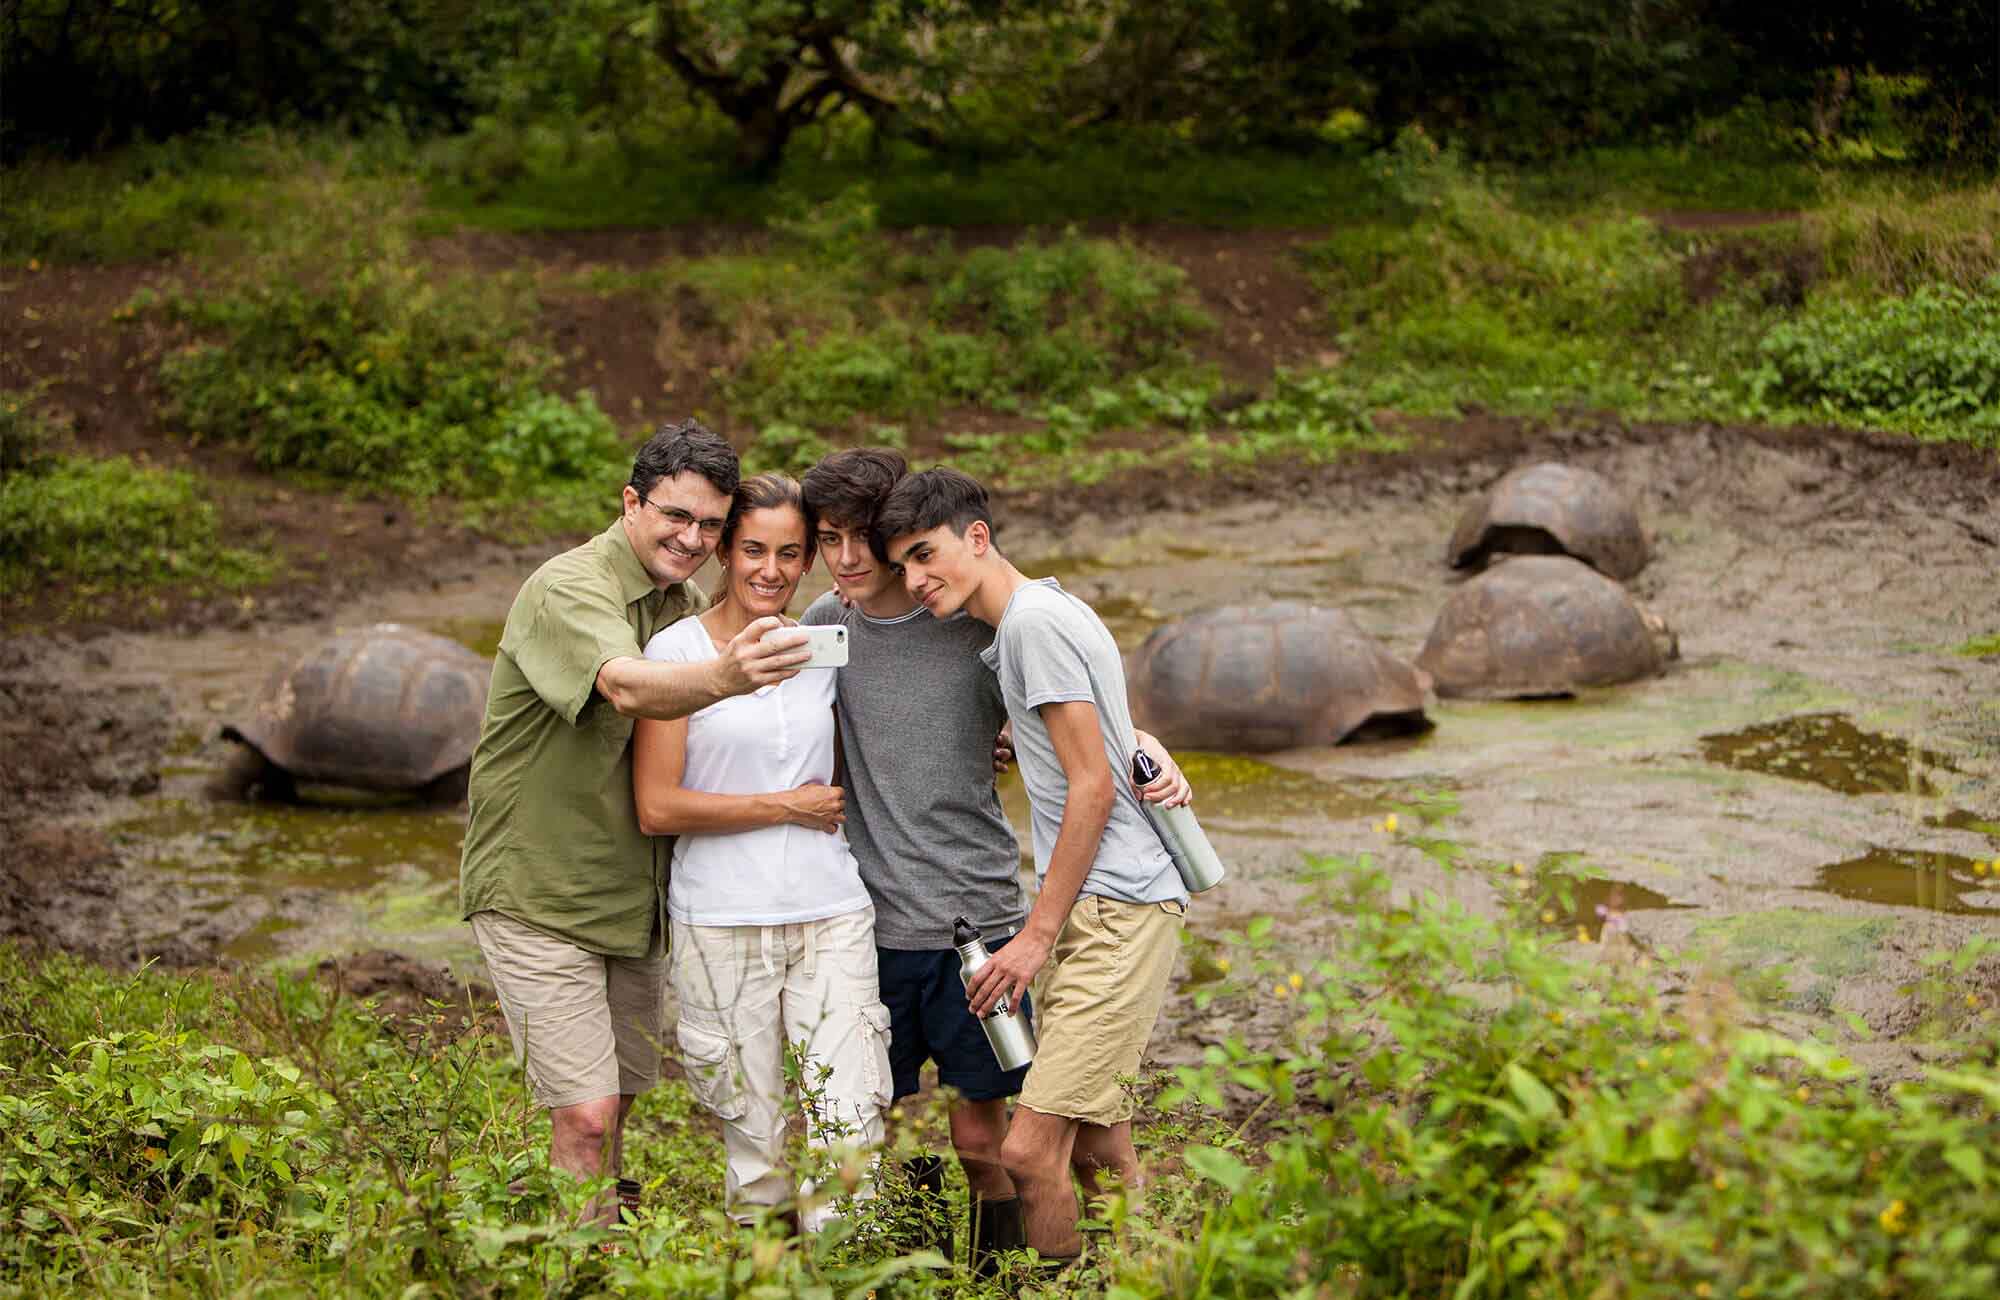 Family giant tortoise galapagos